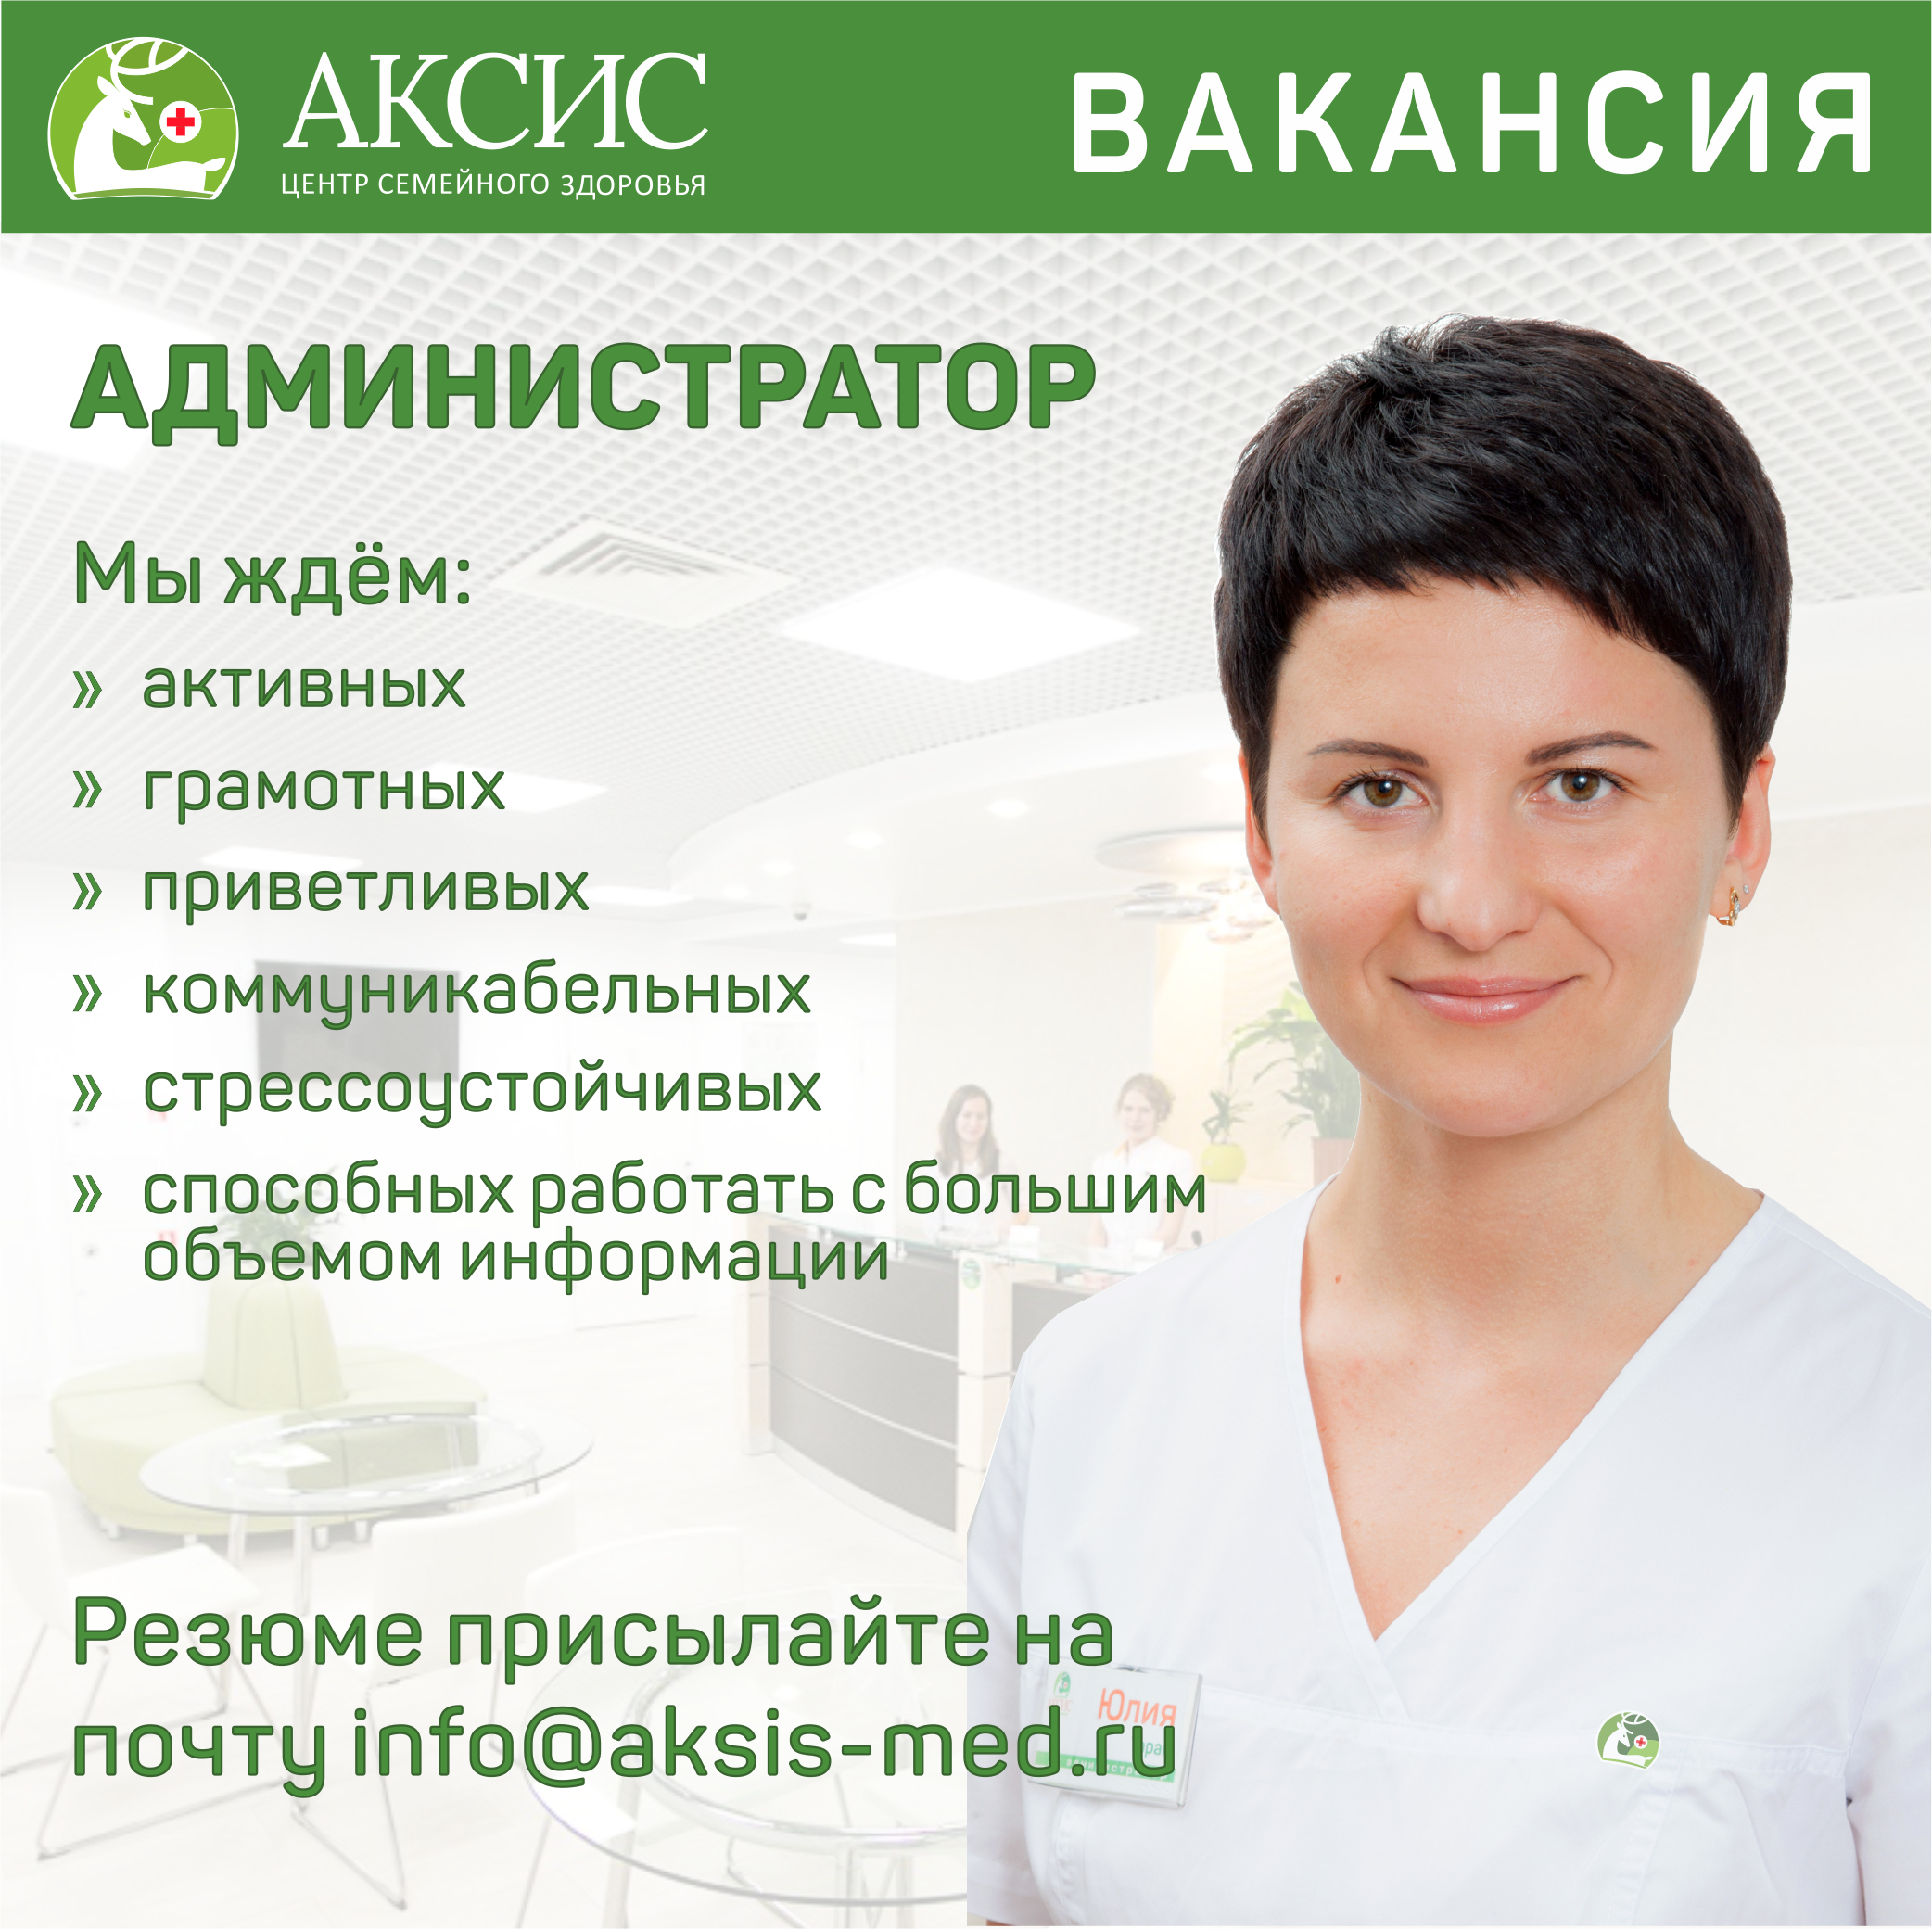 Работа администратора клиники без опыта в Москве